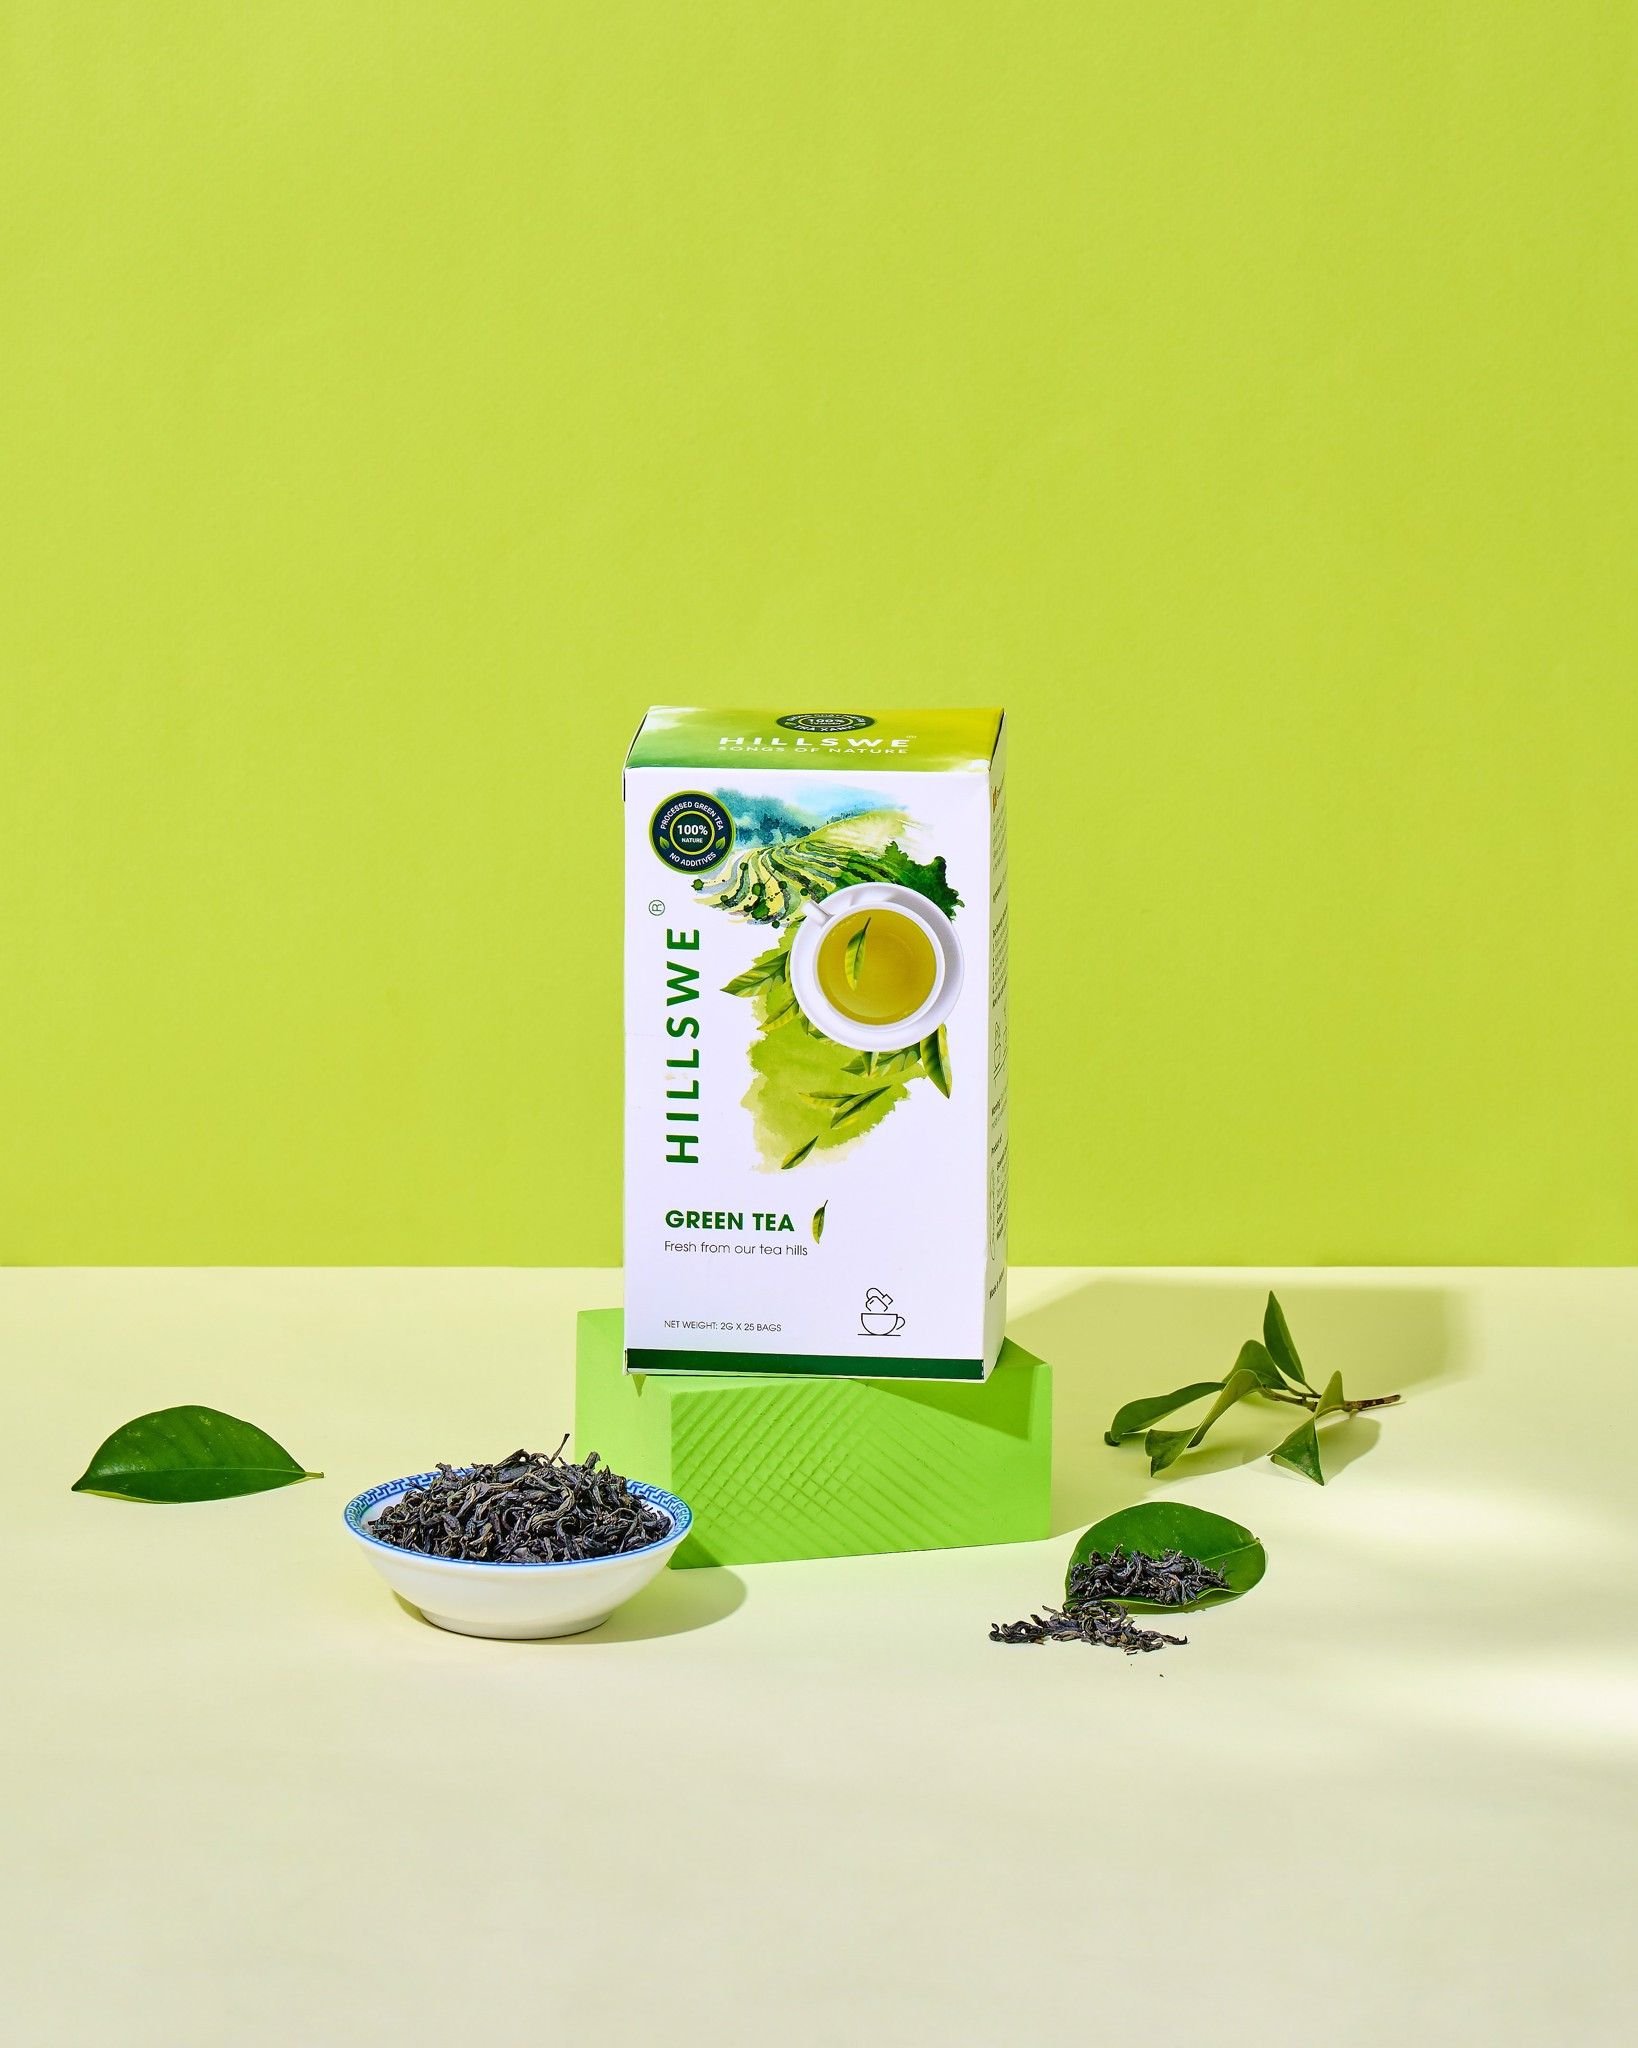  Trà xanh túi lọc/ Green Tea Filter Bag - TXH1 